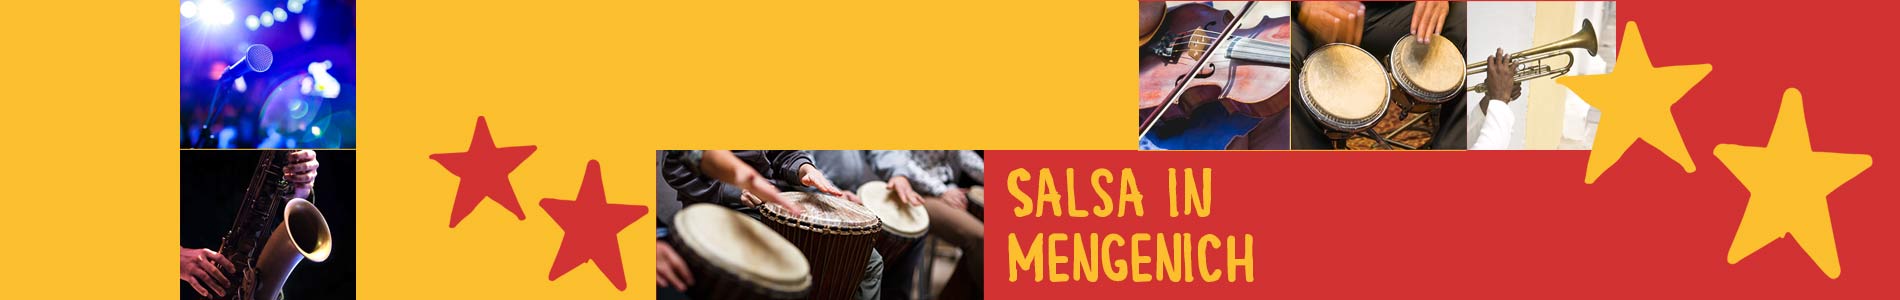 Salsa in Engen – Salsa lernen und tanzen, Tanzkurse, Partys, Veranstaltungen